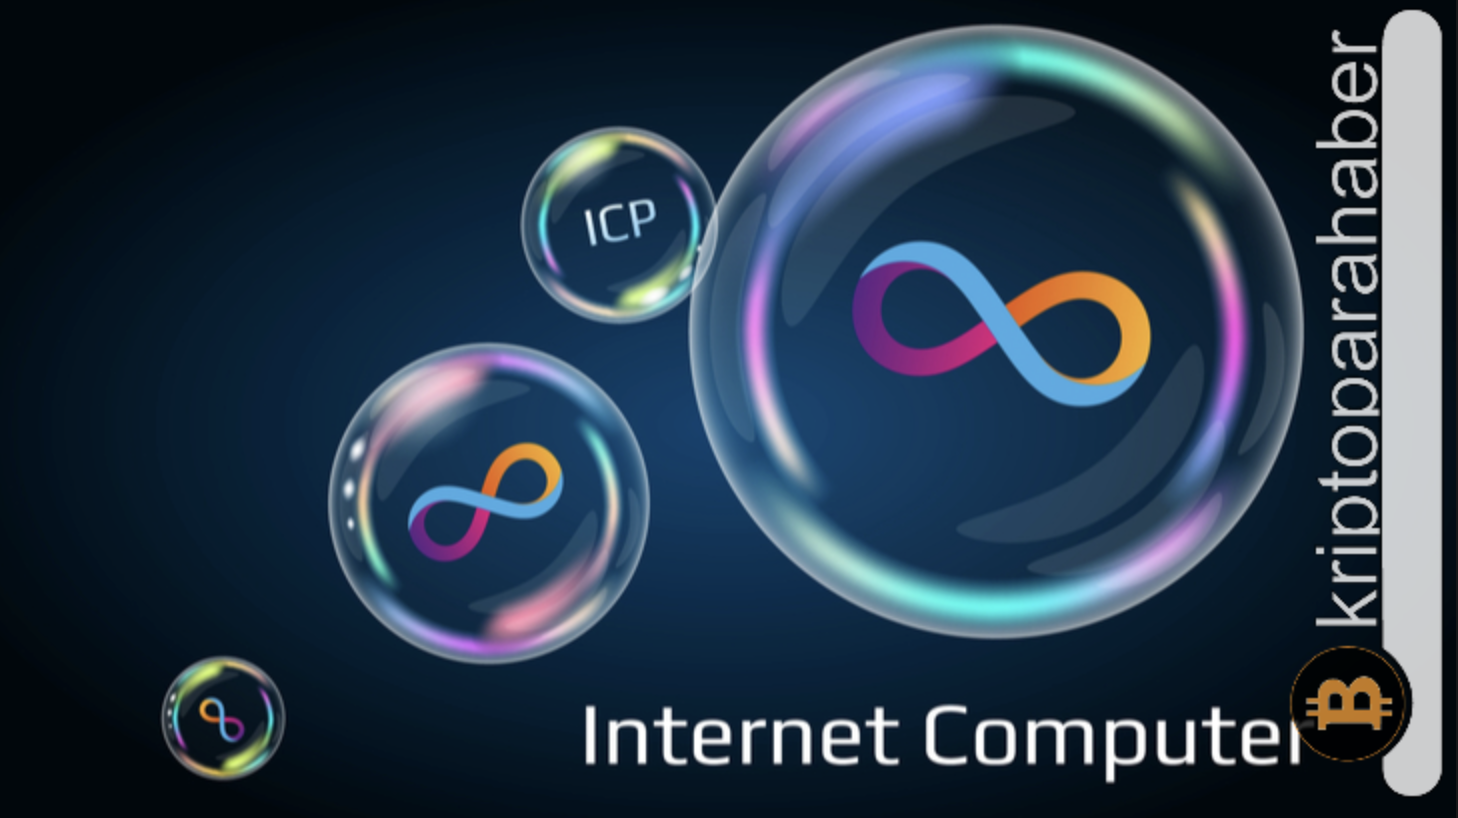 Internet Computer yükselişte: ICP, blockchain dünyasında neden fark yaratıyor?